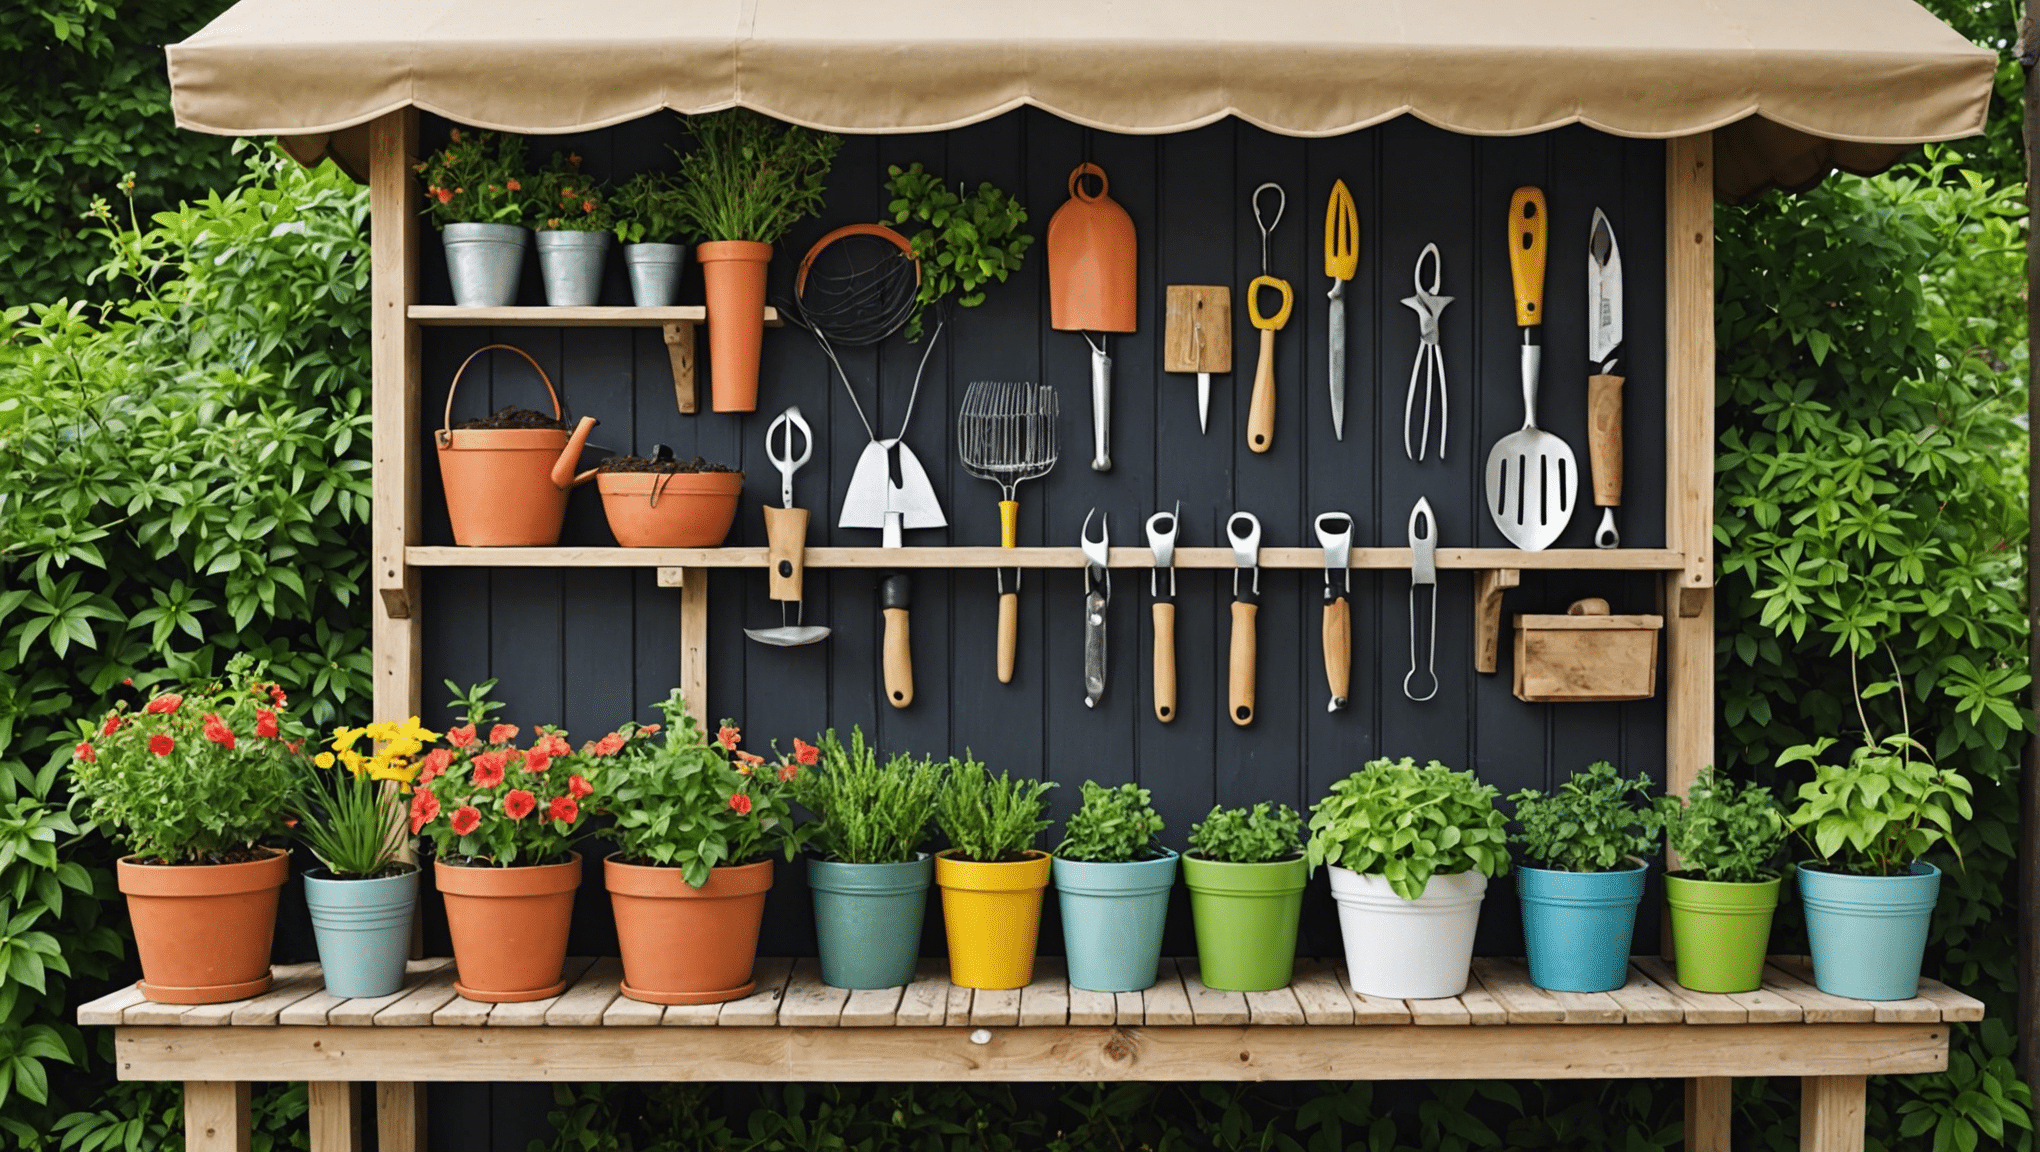 découvrez des idées créatives de rangement d'outils de jardinage pour garder votre équipement de jardin organisé et accessible grâce à nos conseils et solutions utiles.